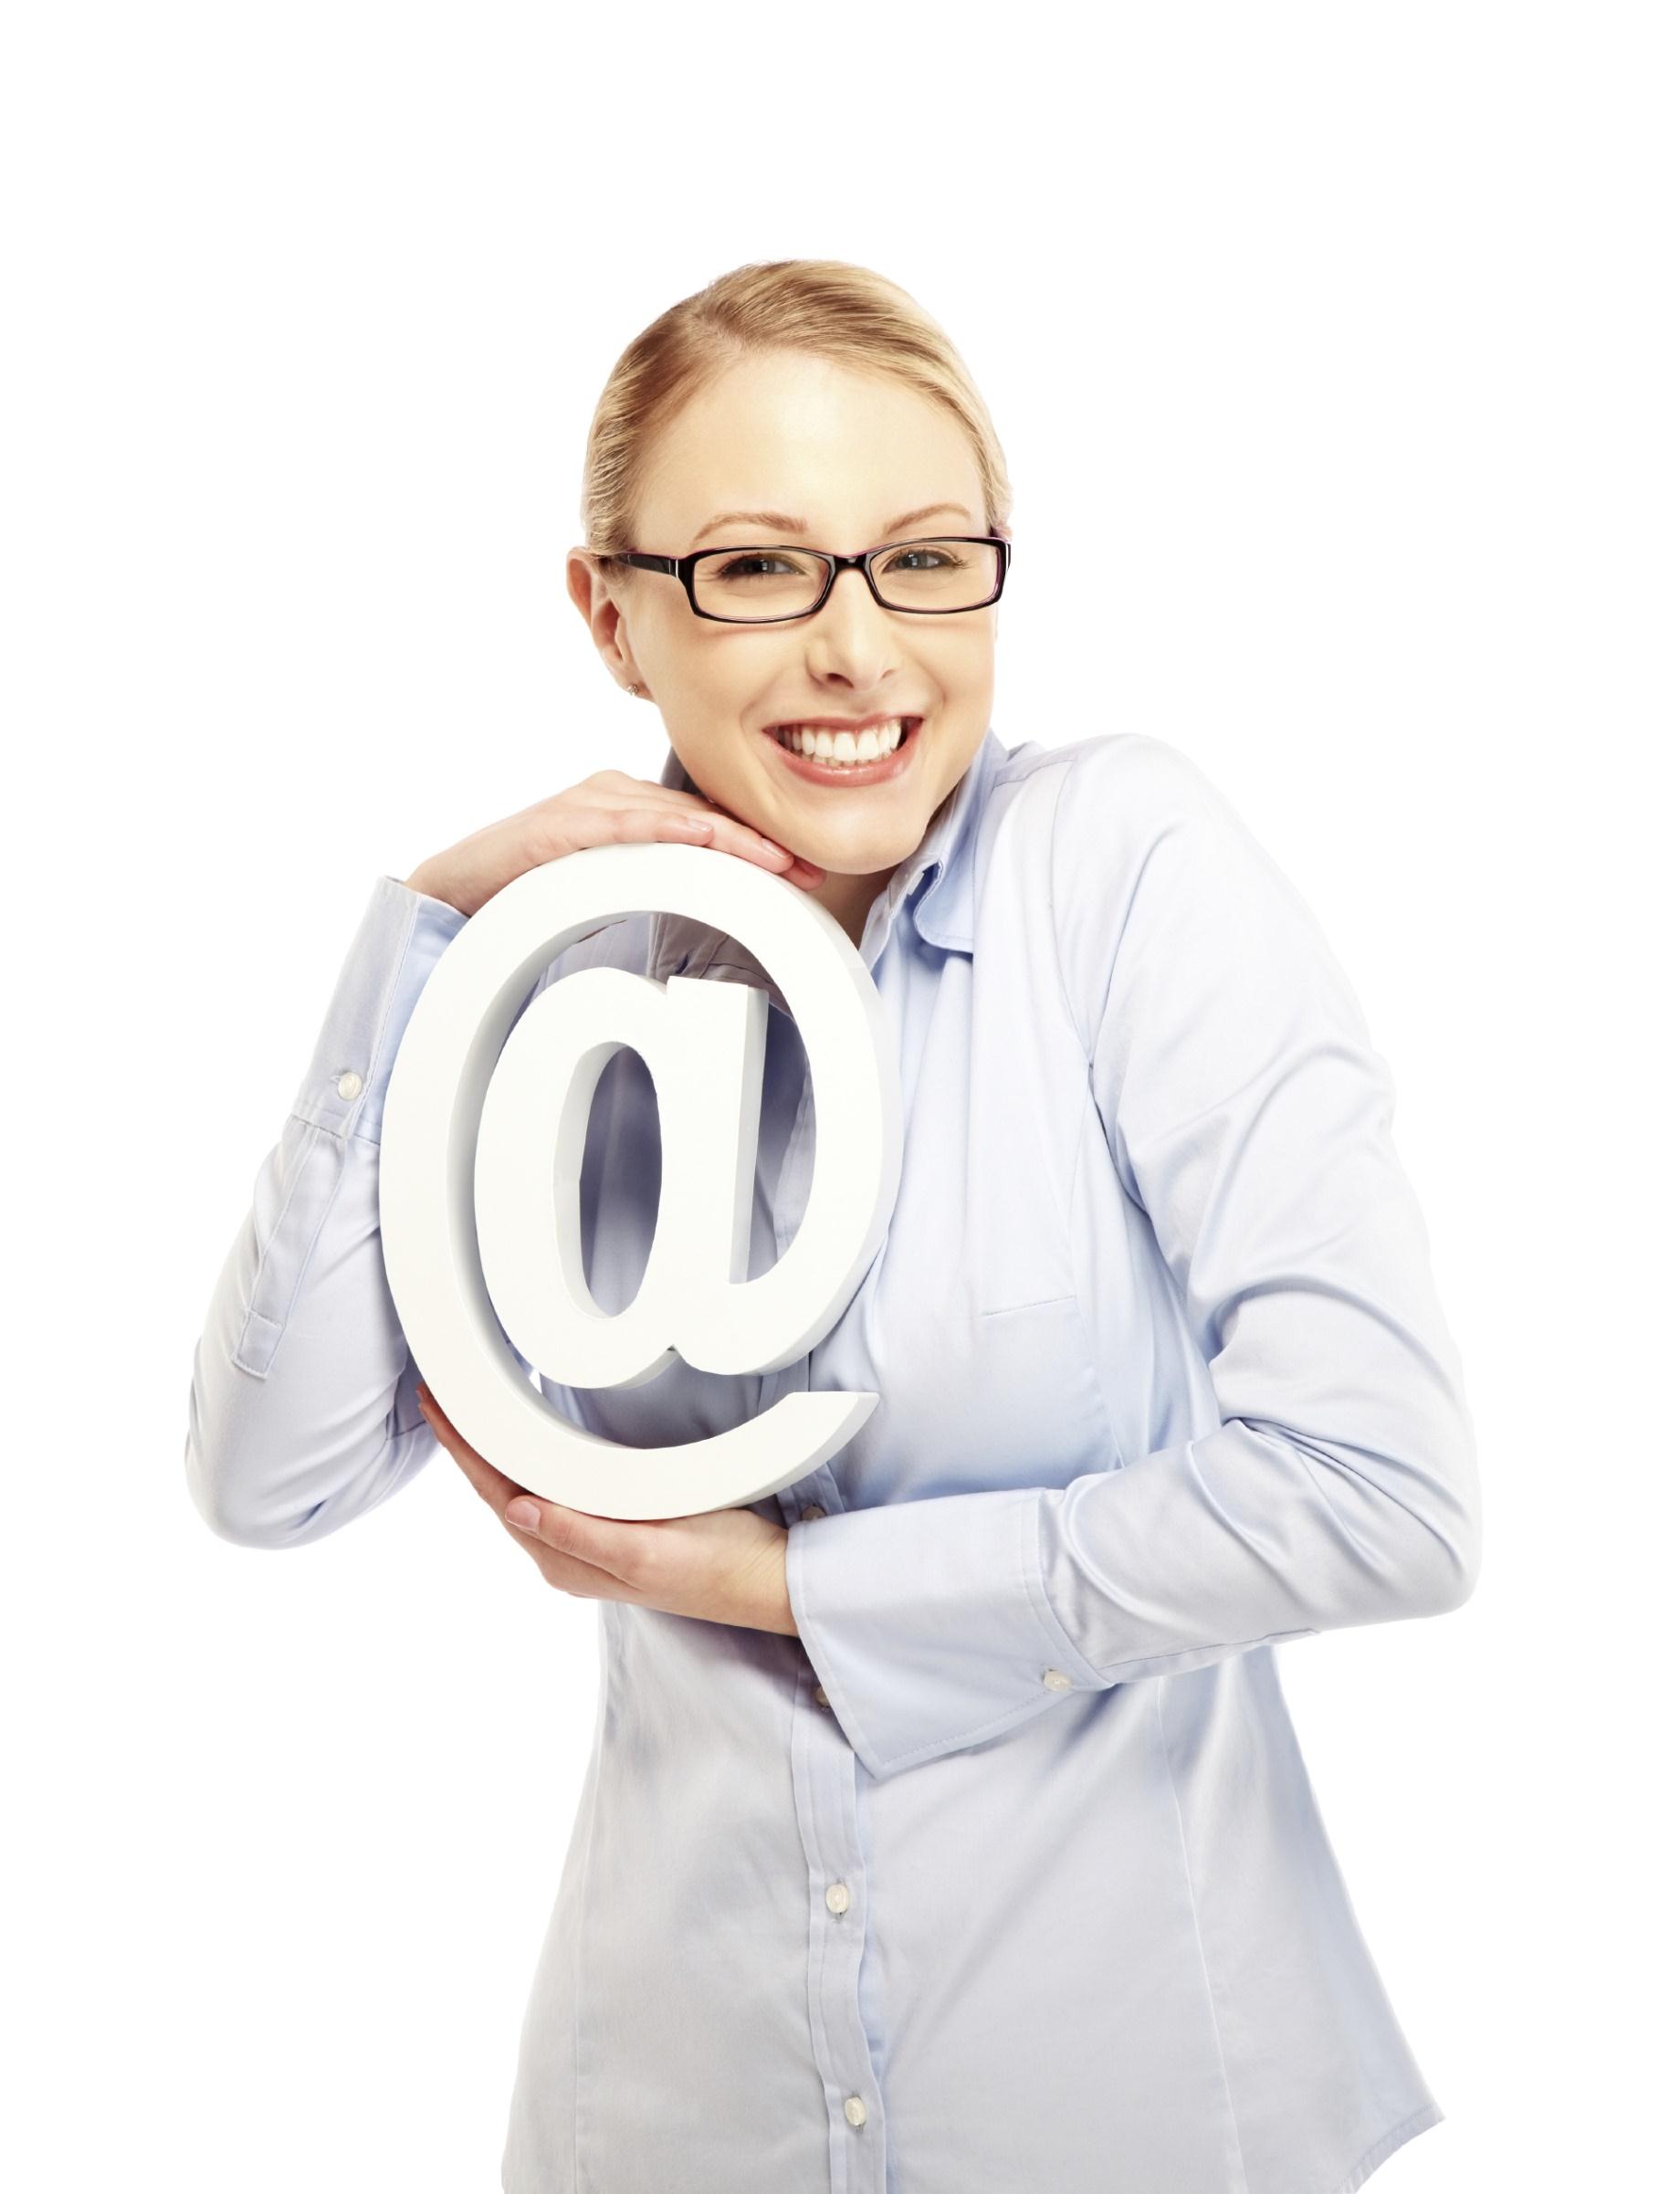 Was ist SecureMail@docsellent? Die klassische E-Mail hat die Sicherheit einer offenen Postkarte und eignet sich damit nur sehr eingeschränkt für die Kommunikation im geschäftlichen Bereich.